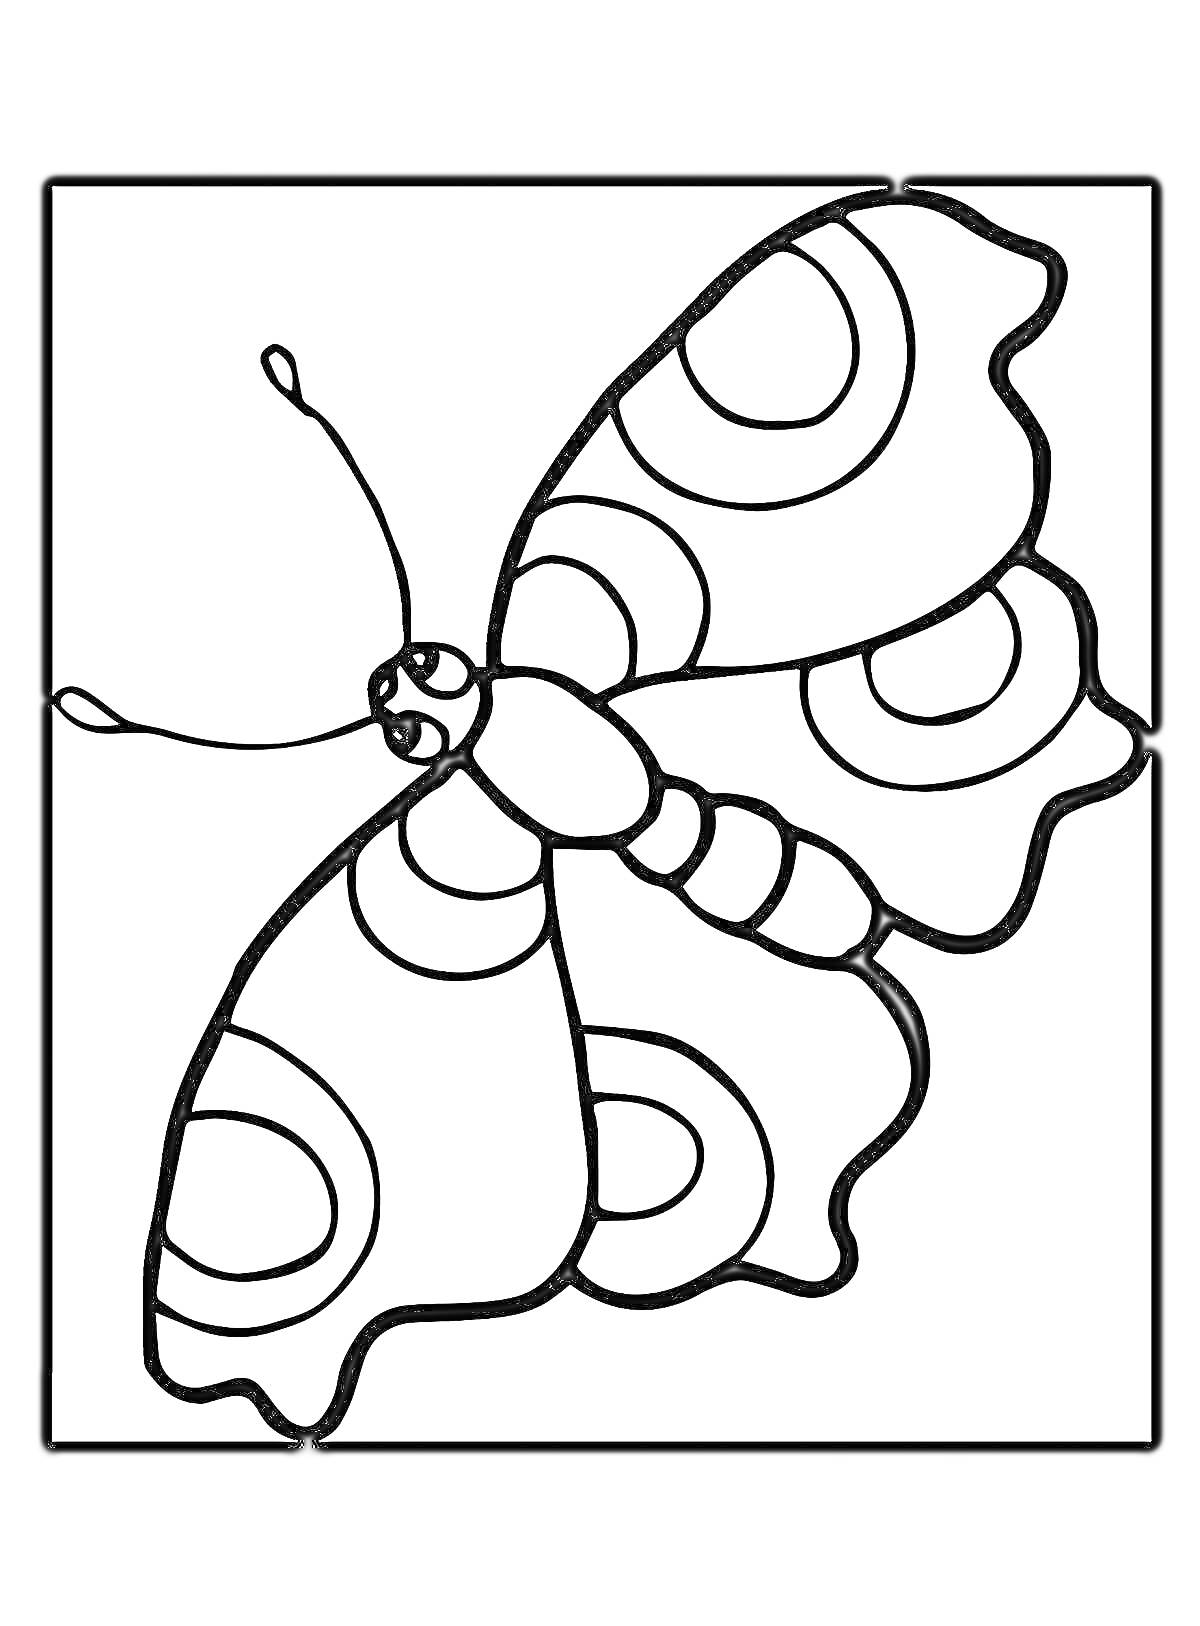 Раскраска Бабочка с узорными крыльями